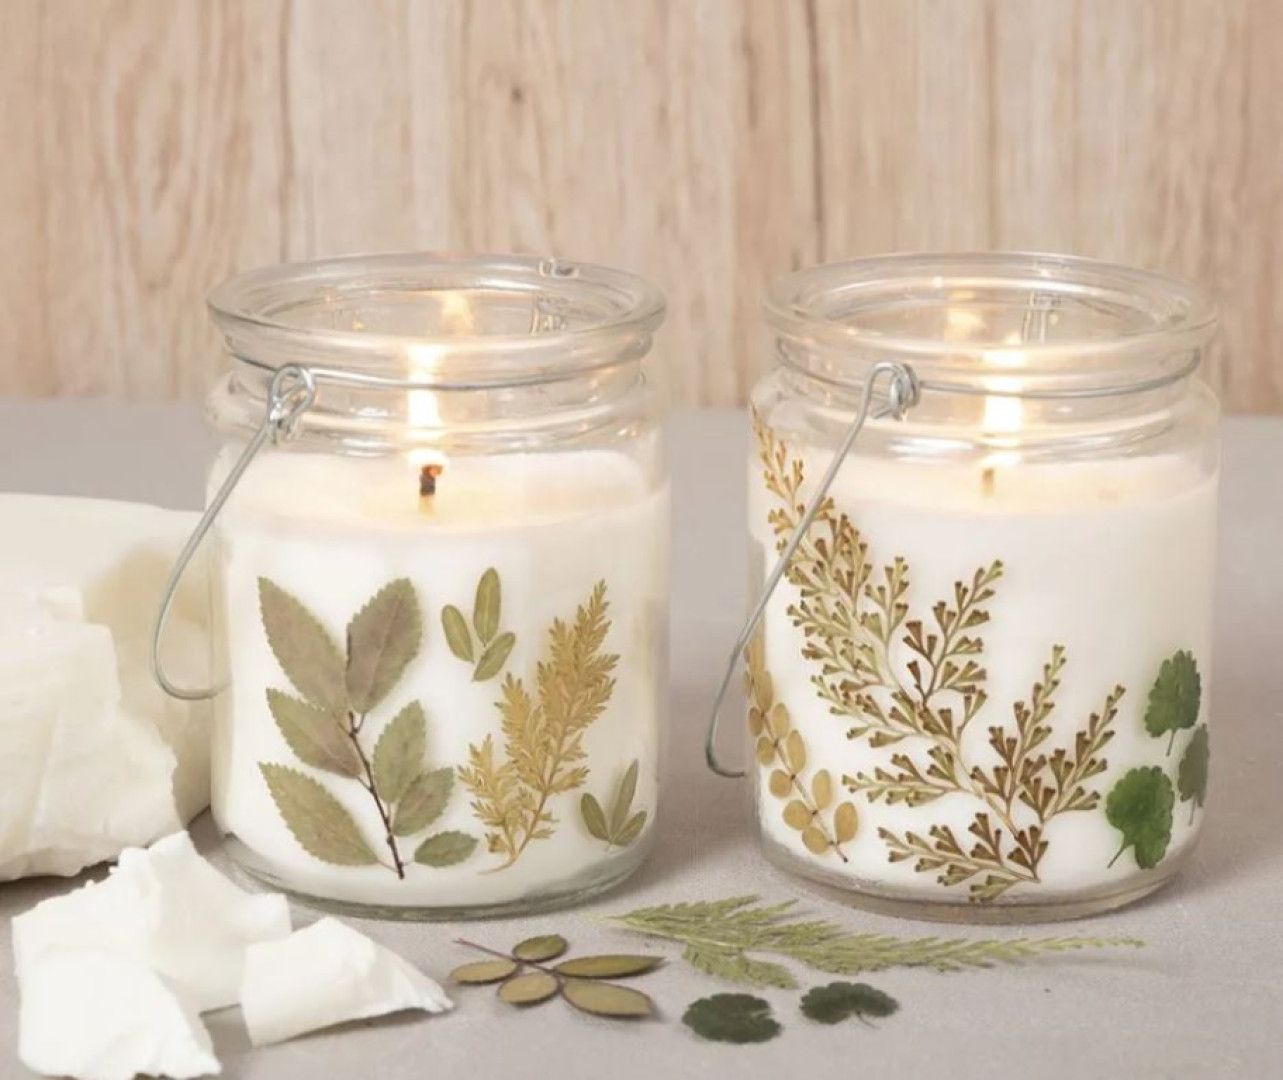 Vyrob si - dekorativní svíčky s rostlinkami